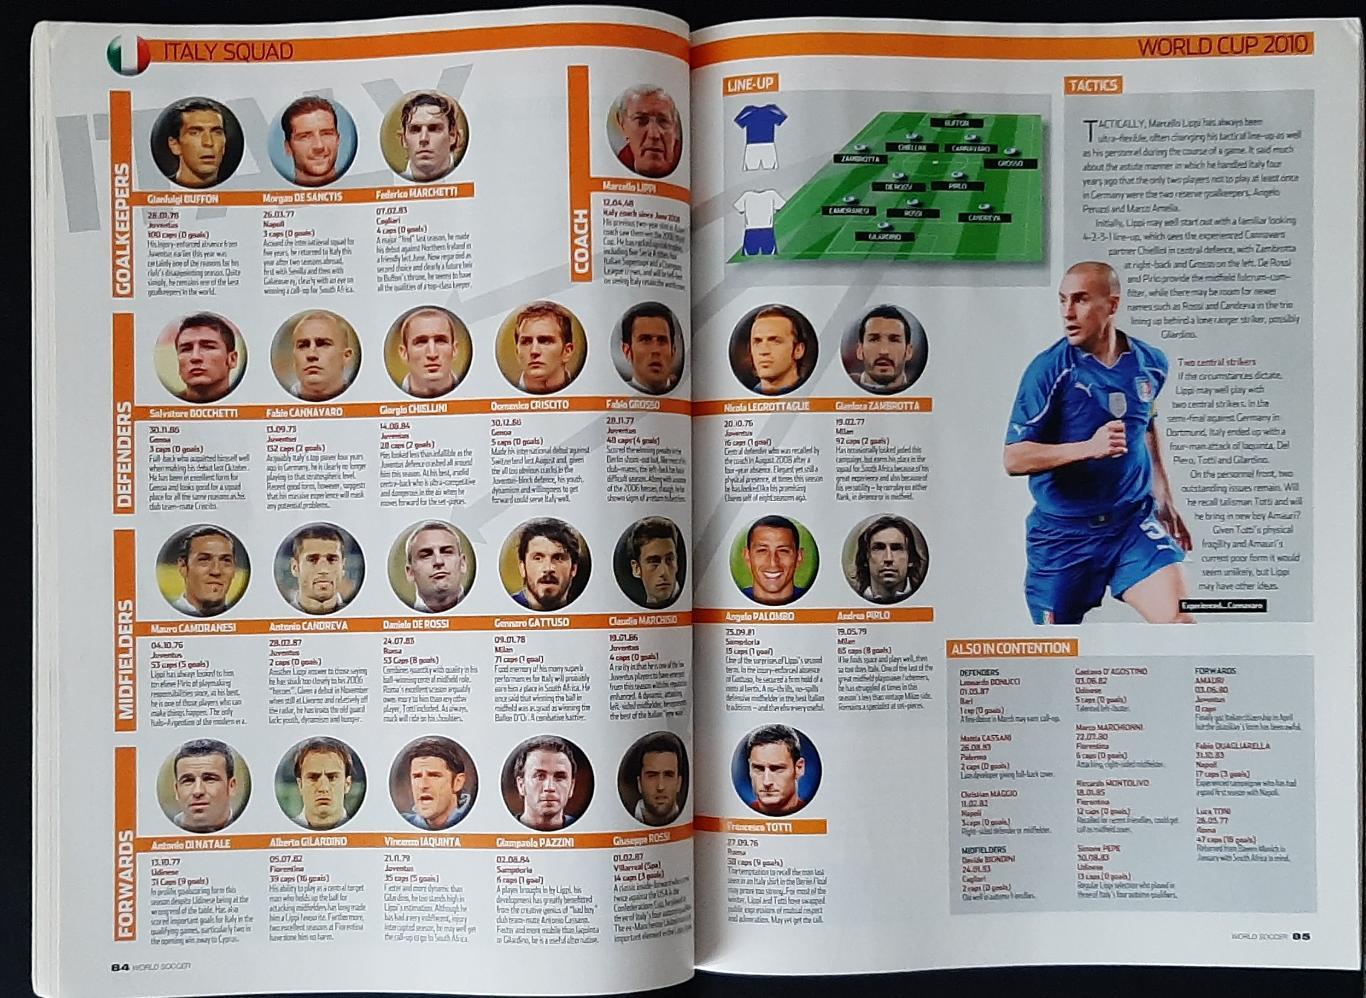 Журнал World soccer 2010 Представлення команд до чемпіонату світу 6